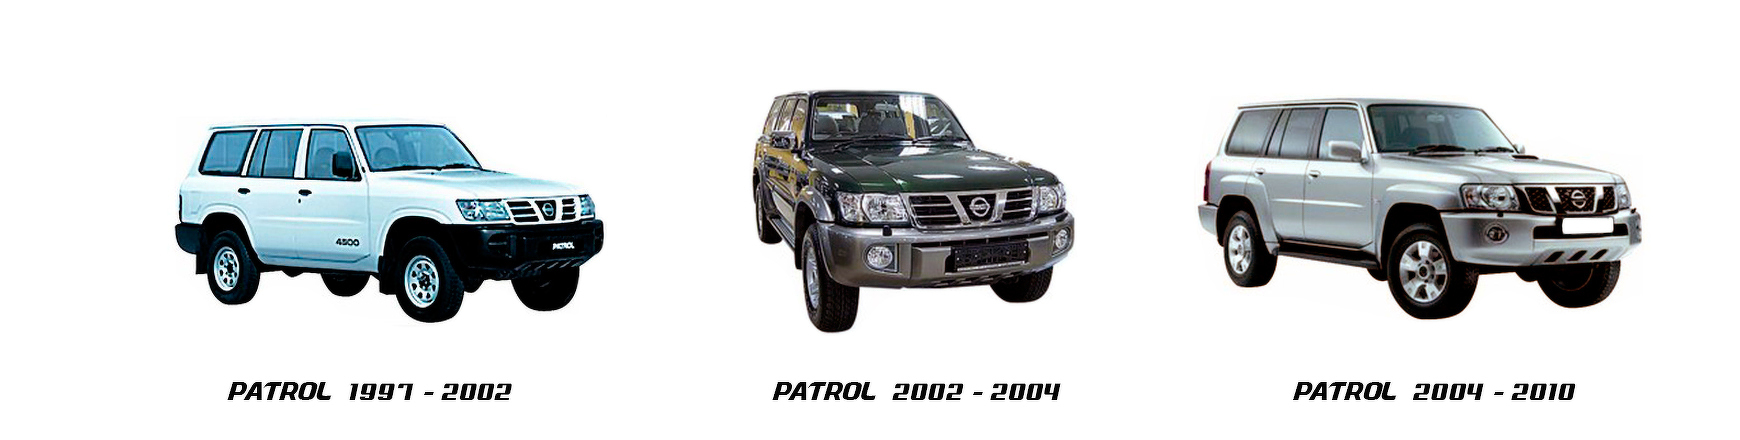 nissan patrol 1997 1998 1999 2000 2001 2002